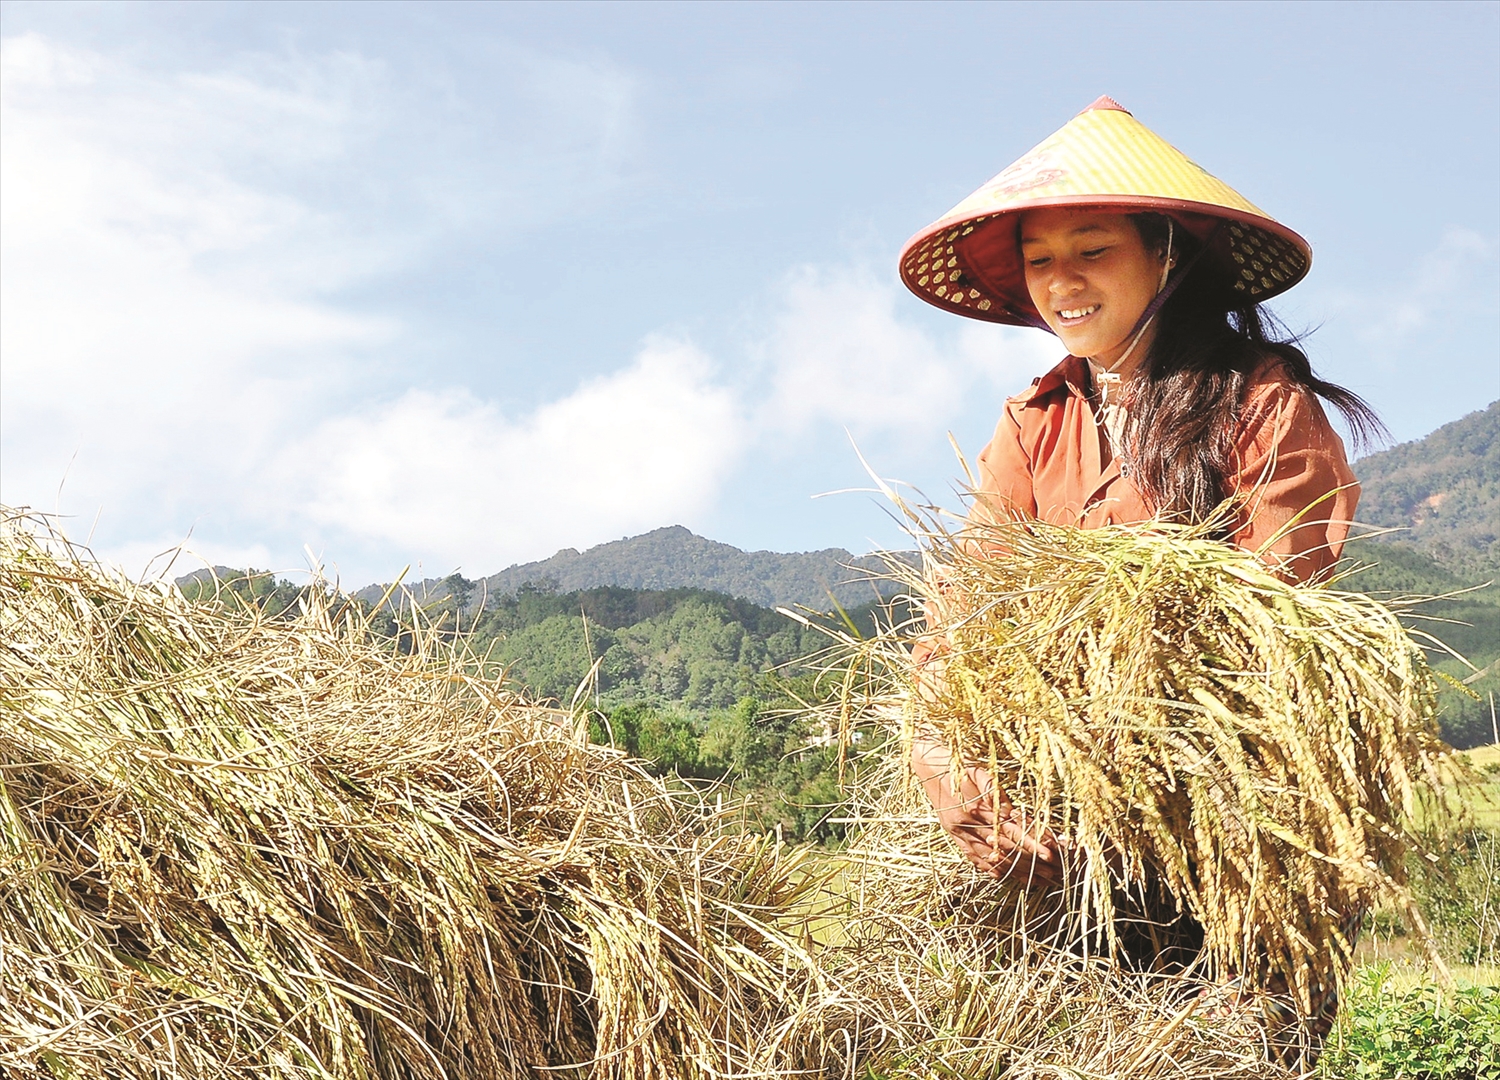 Thủy lợi được đầu tư nên cây lúa sinh trưởng tốt, cho năng suất cao, giúp đồng bào Xơ Đăng ở xã Măng Ri đảm bảo được nguồn lương thực.